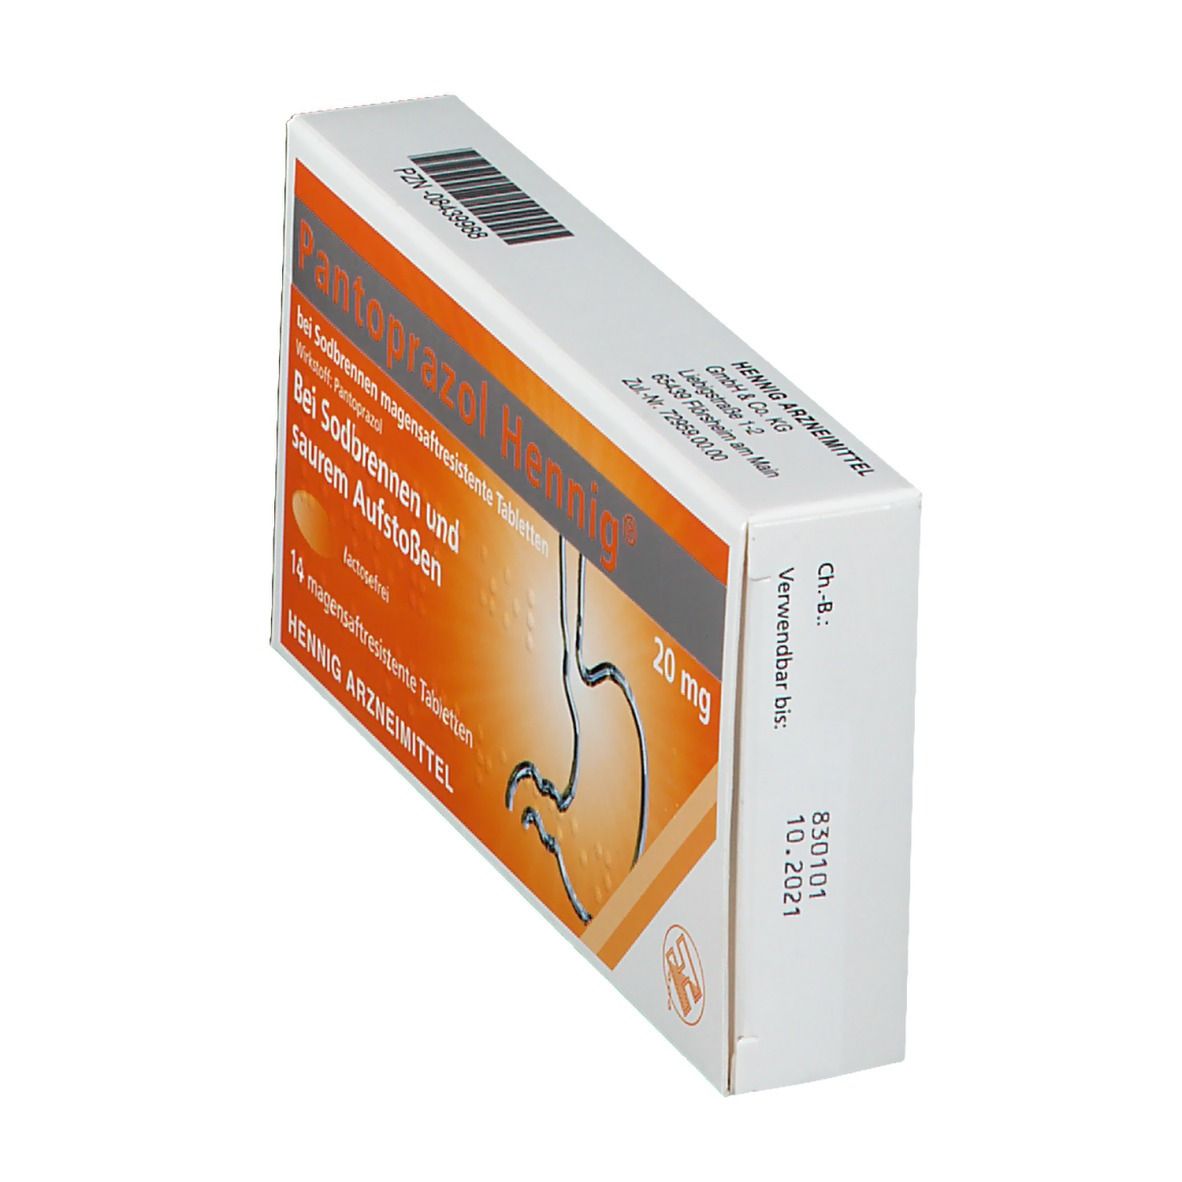 Pantoprazol Henning 20 mg